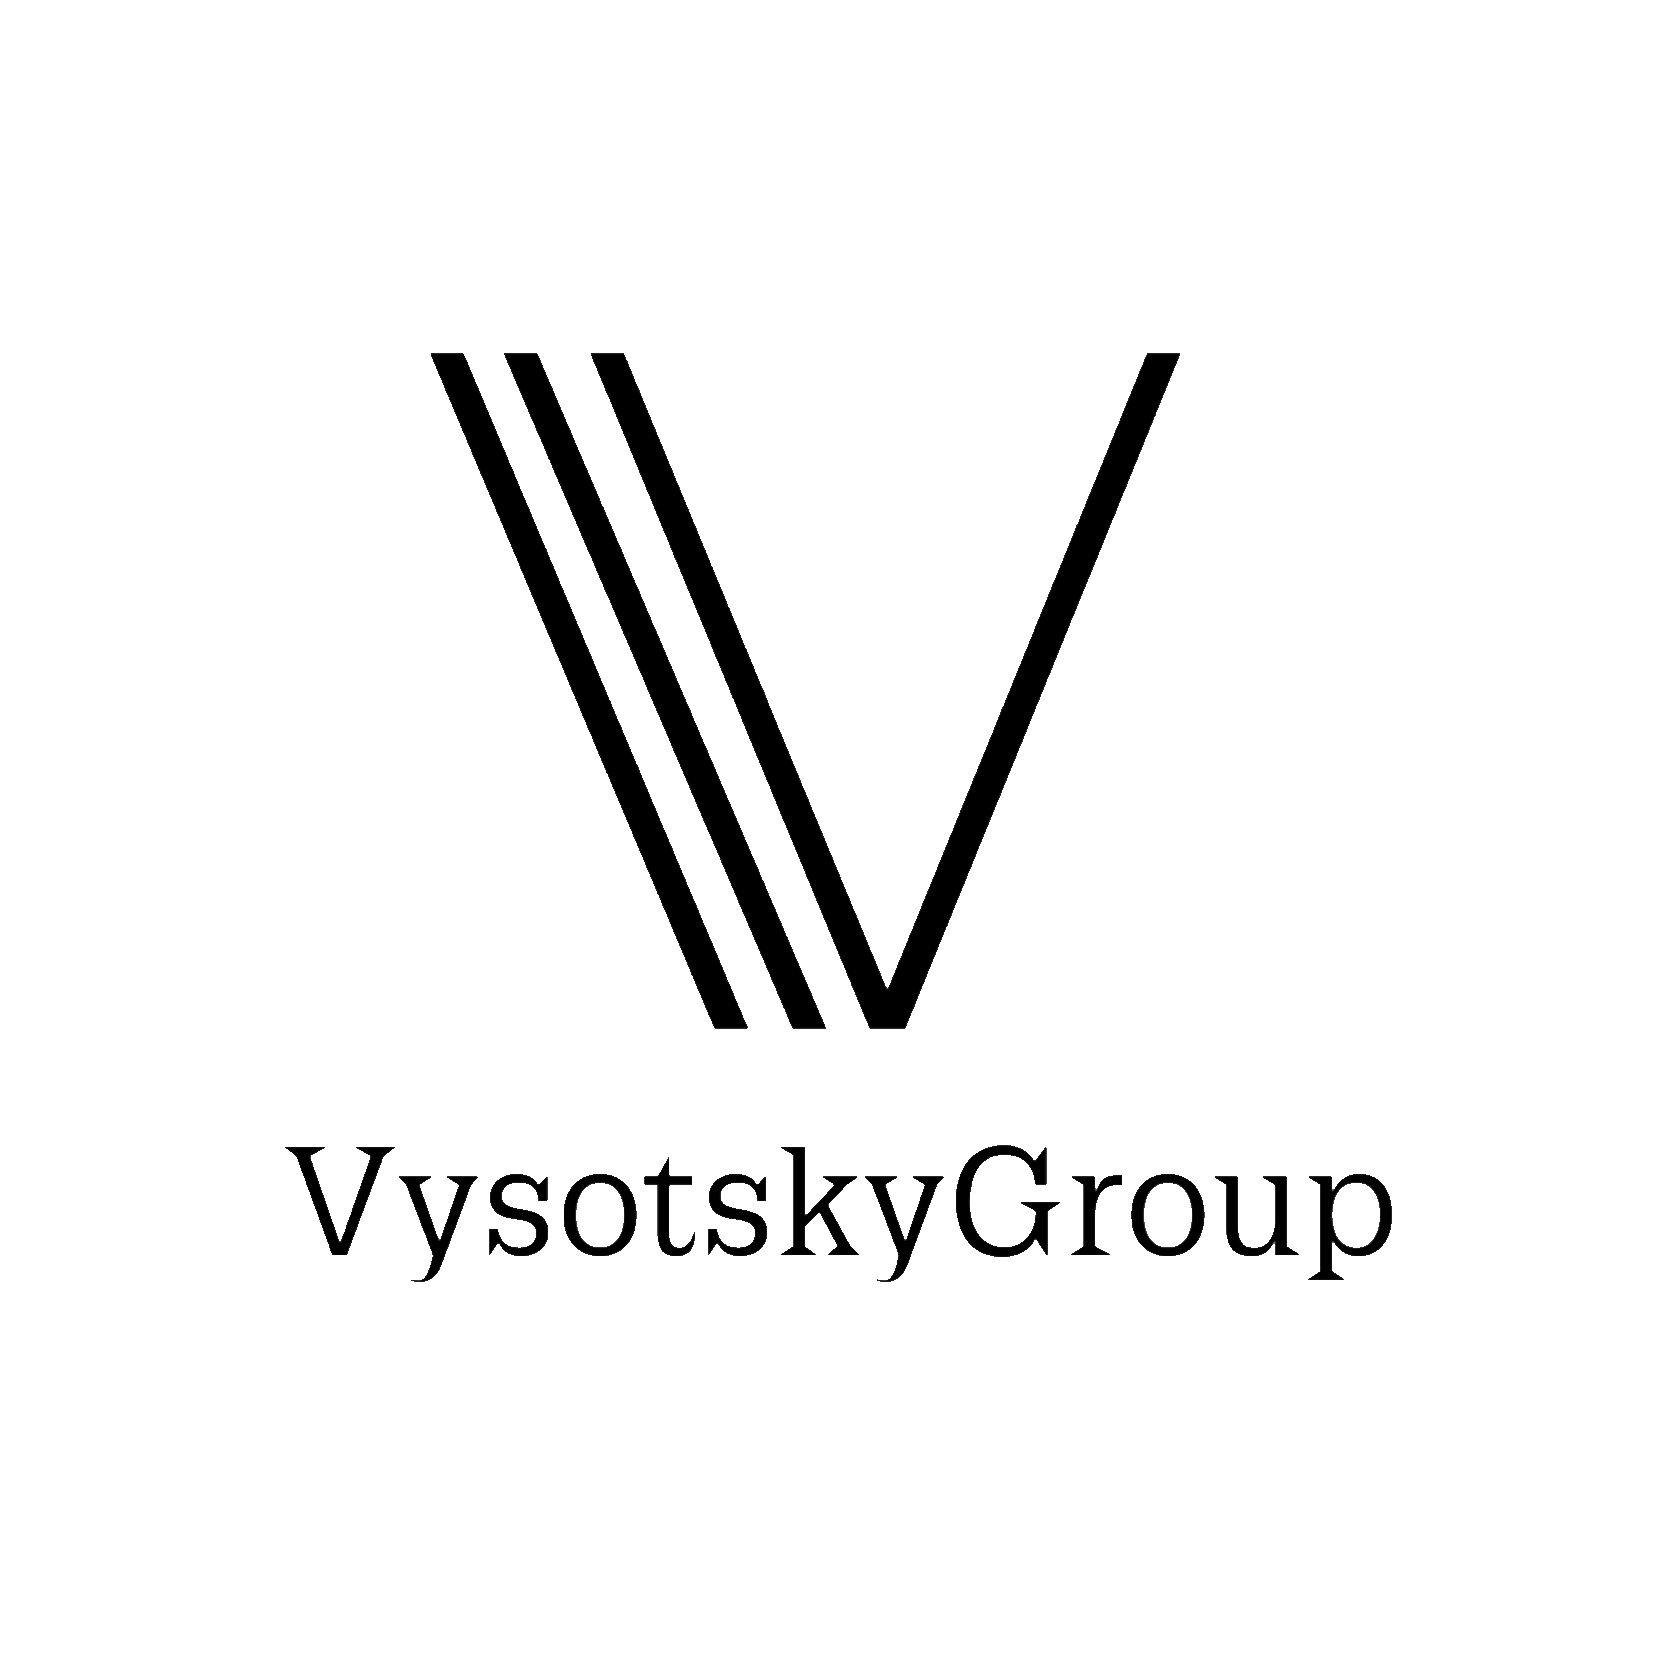  Vysotsky.Group 